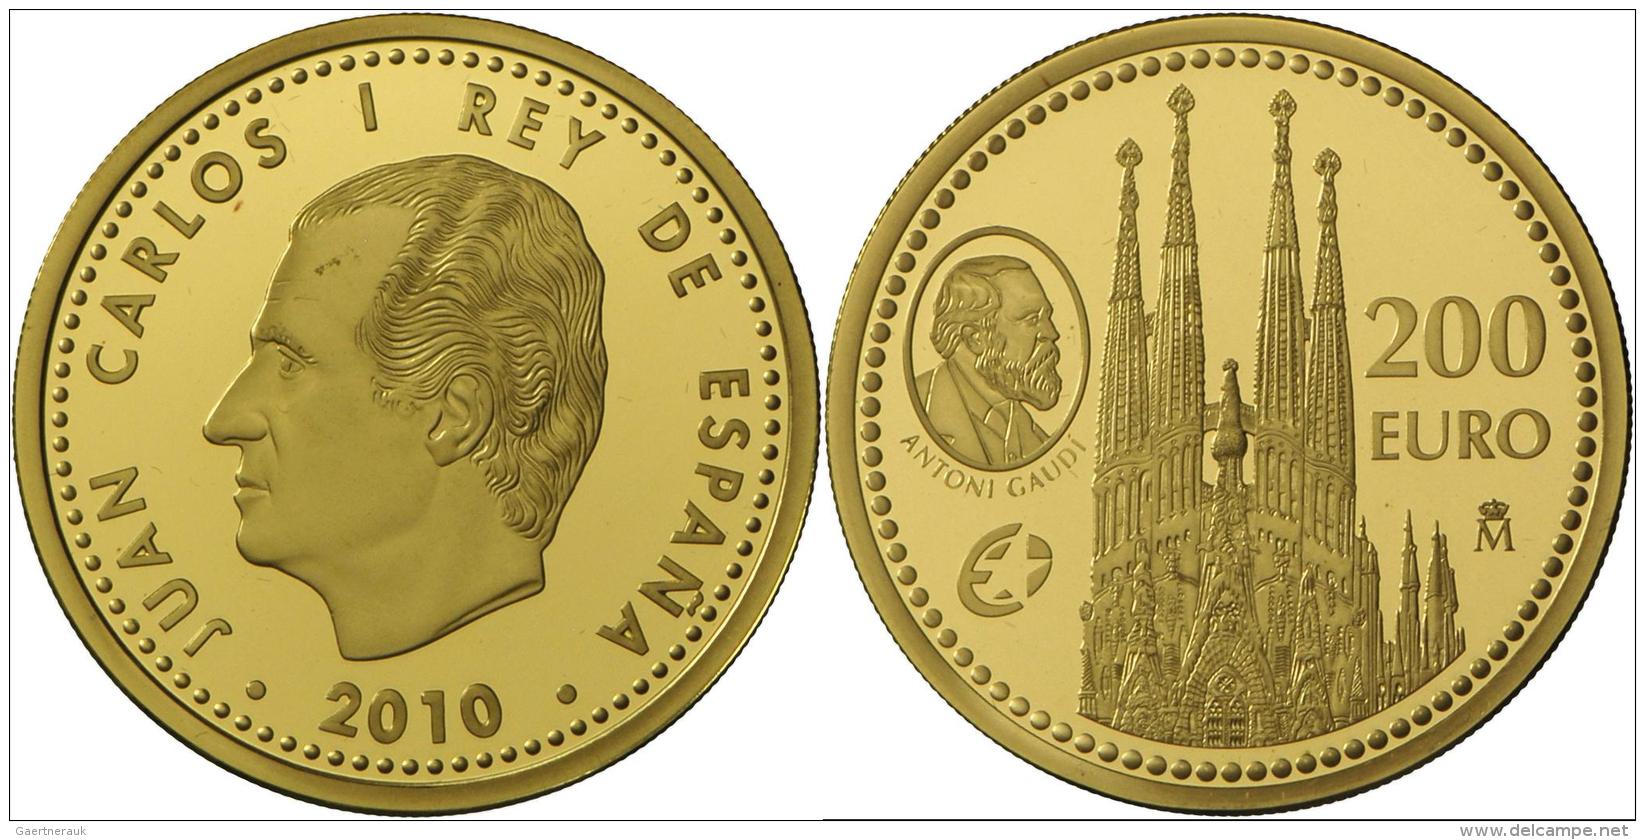 Spanien - Anlagegold: Gaudi, 200 &euro; 2010, 13.5g Feingold, Nur 3000 Ex., Etui Zertifikat /Umkarton, Polierte Platte. - Spanien